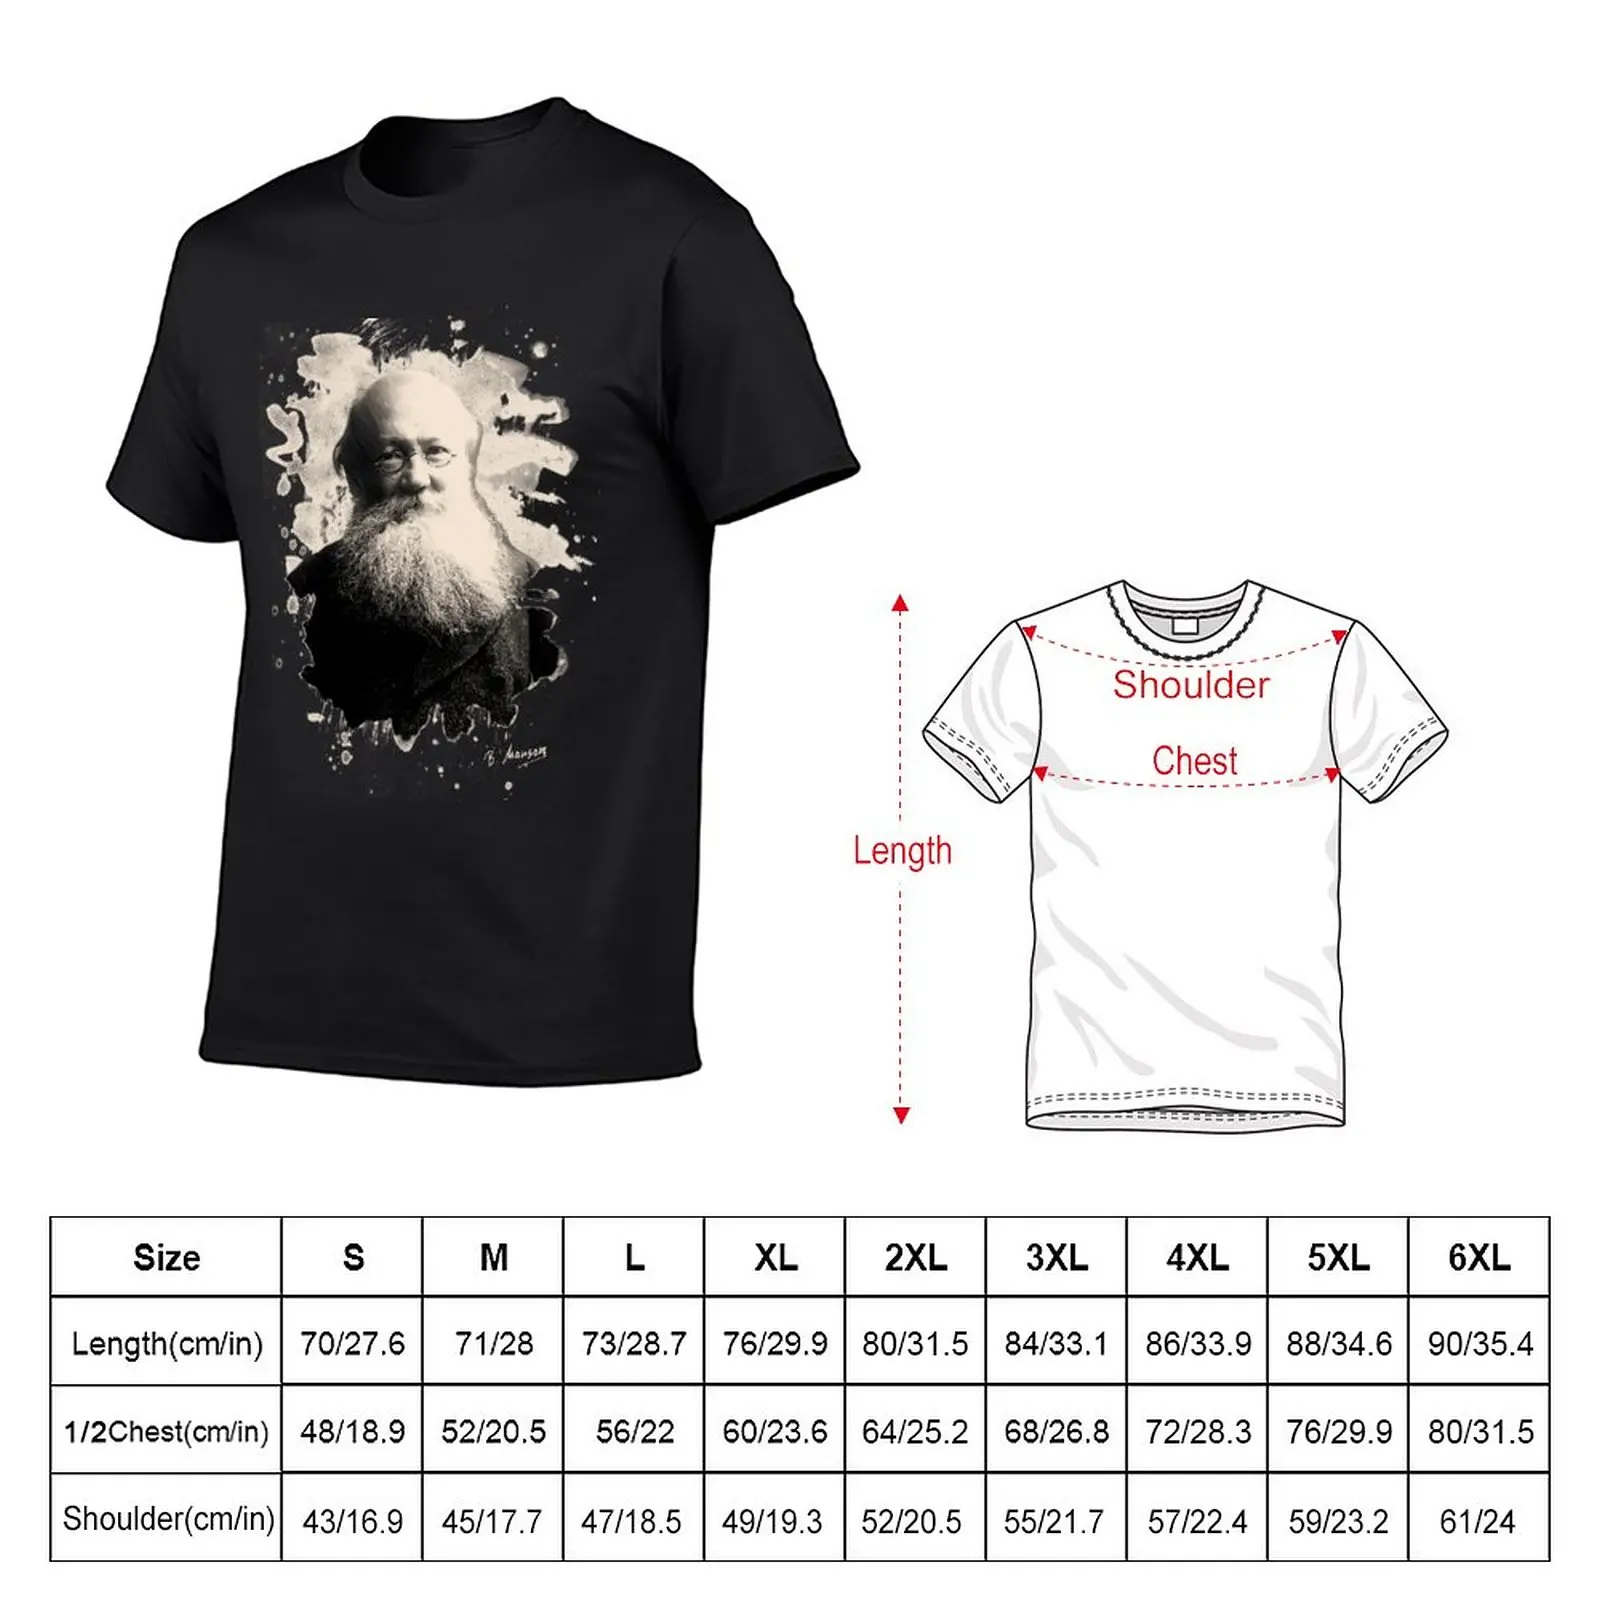 Новая футболка Kropotkin, быстросохнущая футболка, короткая футболка, одежда kawaii, мужские футболки с графическим рисунком. Изображение 1